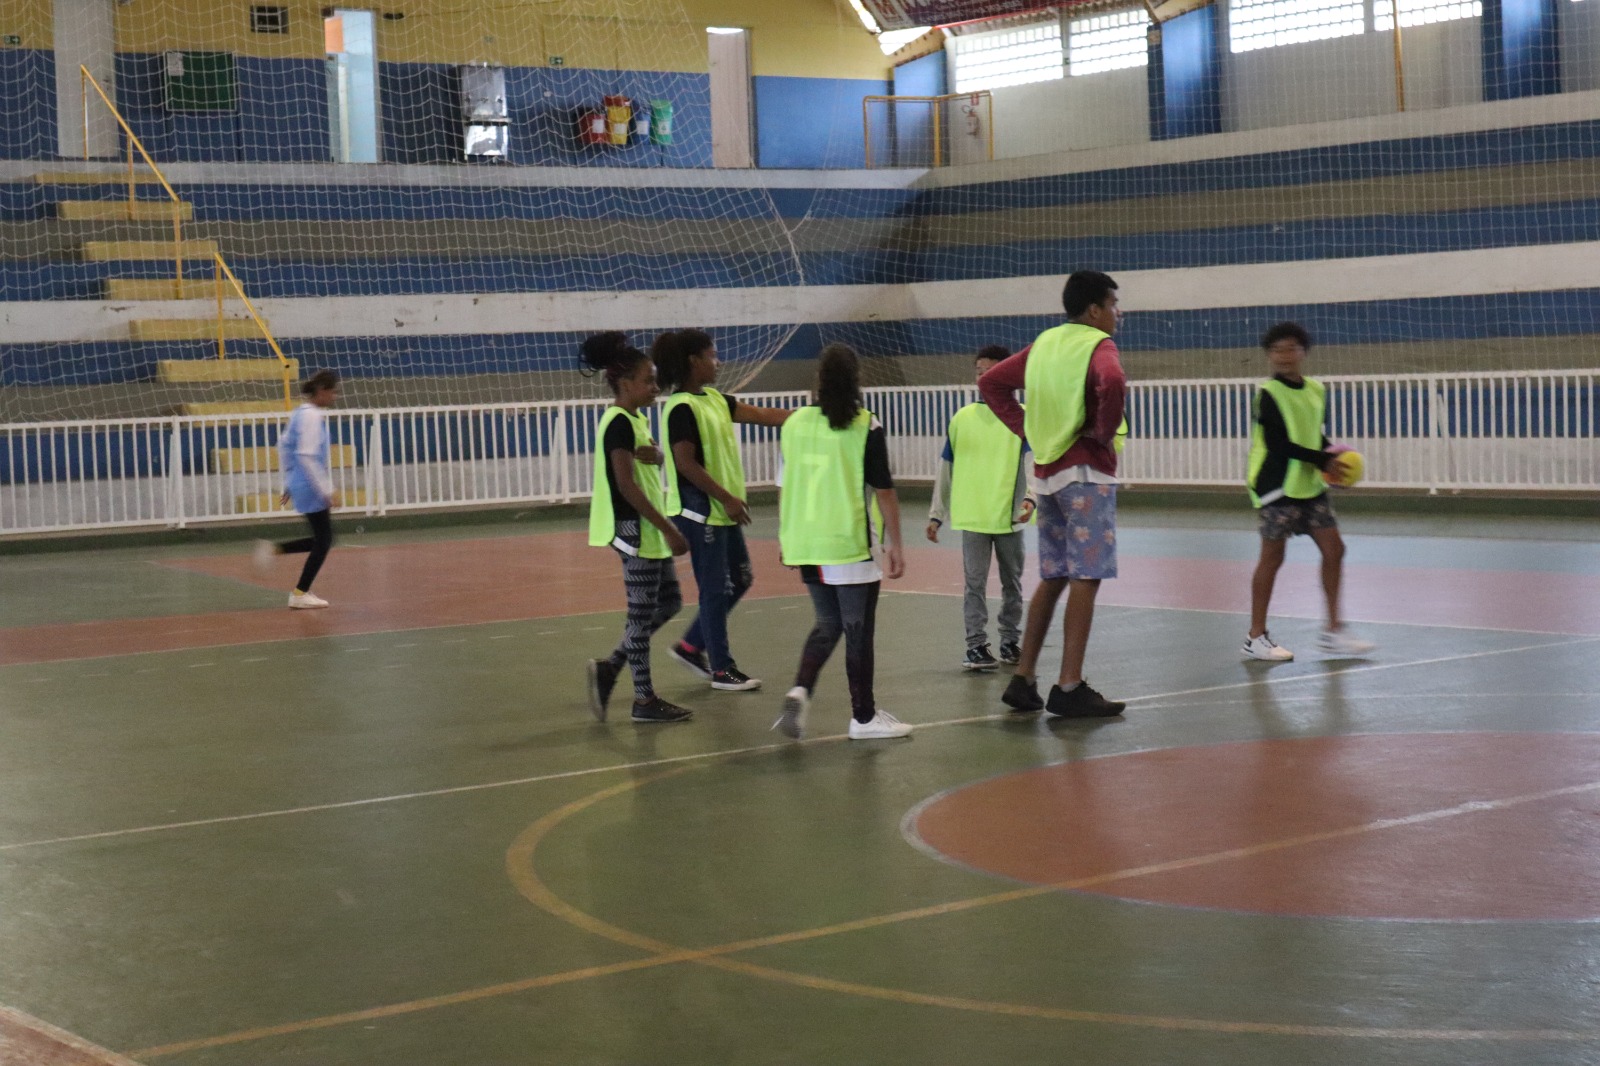 Vem ai!! Jogos escolares 2023. – Prefeitura Municipal de Cosmópolis